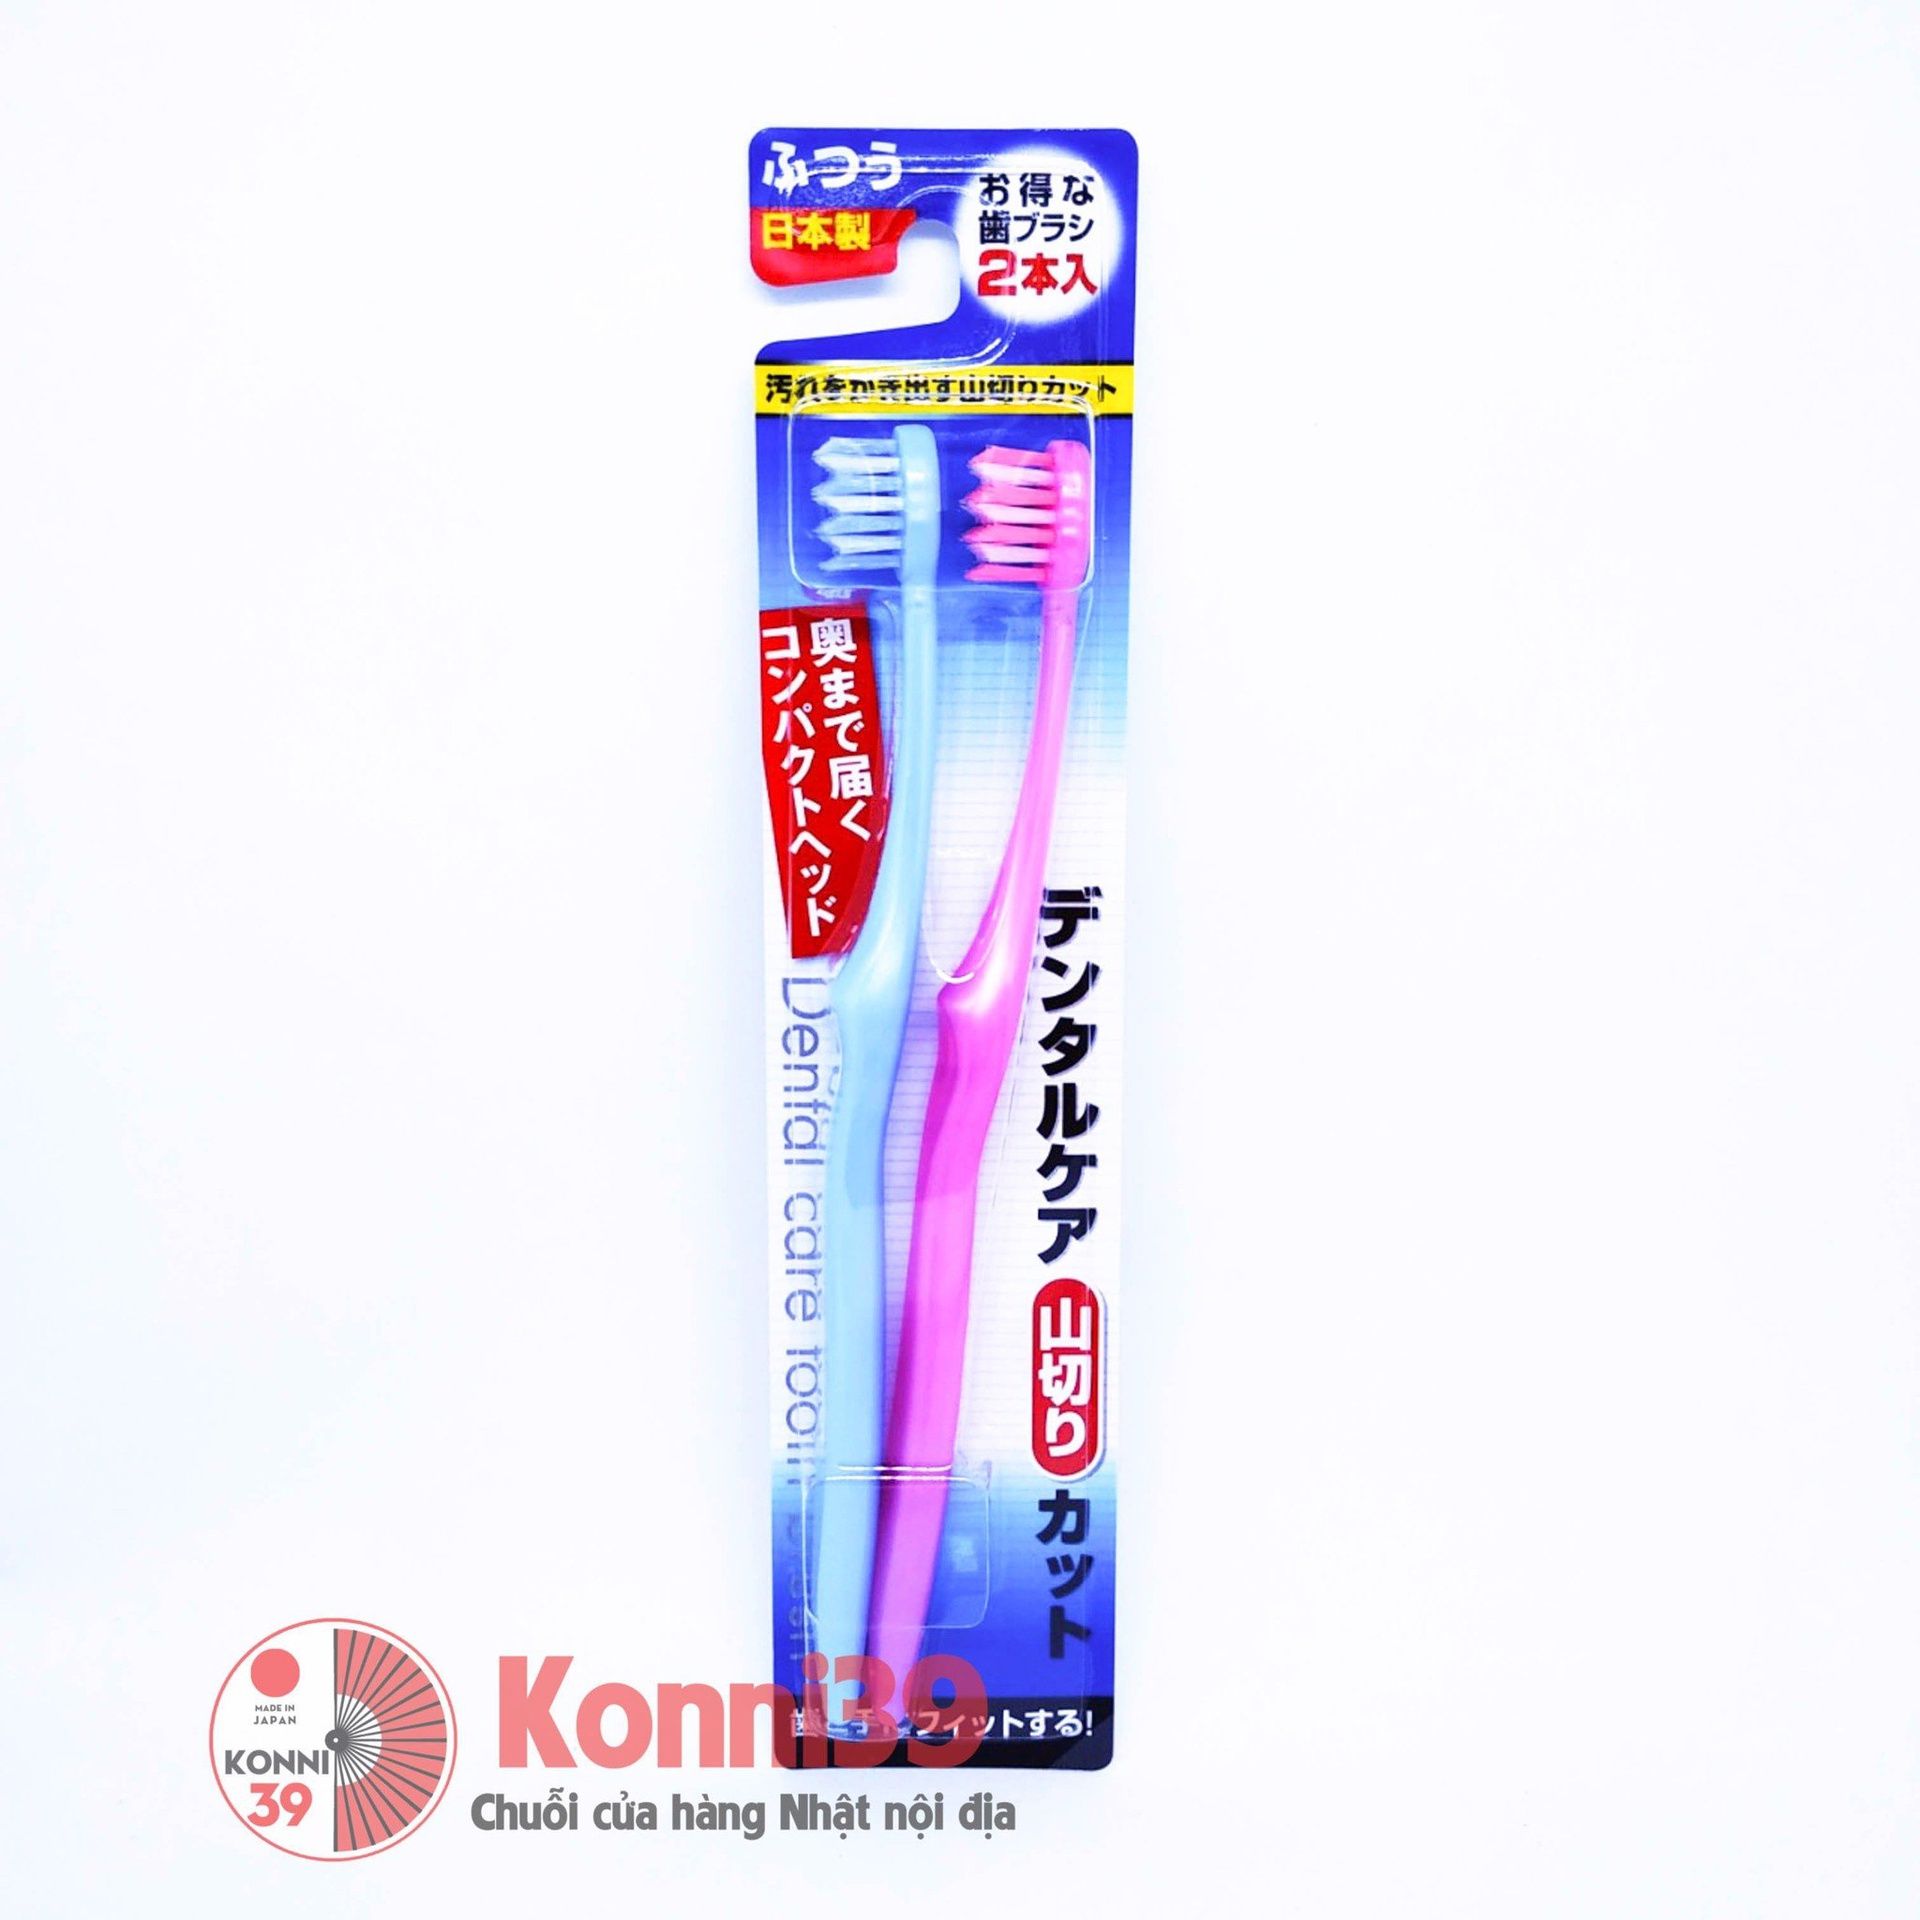 seiwaPro Bàn chải đánh răng set 2p - hàng nội địa Nhật, mẫu MỚI – Chuỗi  siêu thị Nhật Bản nội địa - MADE IN JAPAN Konni39 tại Việt Nam